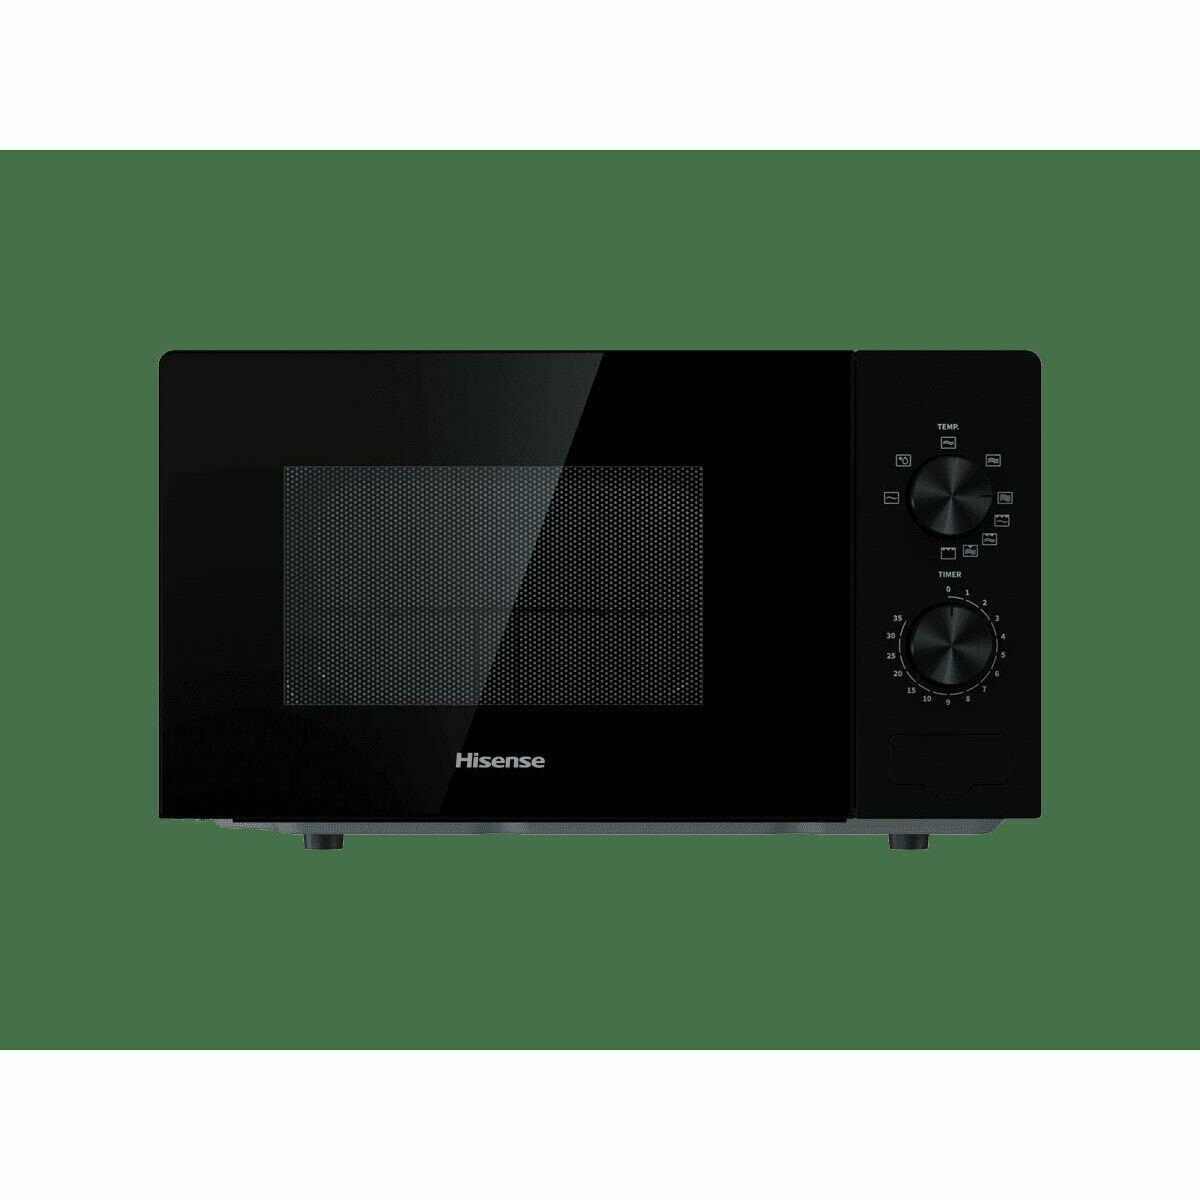 Hisense H20MOBP1 микроволновая печь Столешница Обычная (соло) микроволновая печь 20 L 700 W Черный